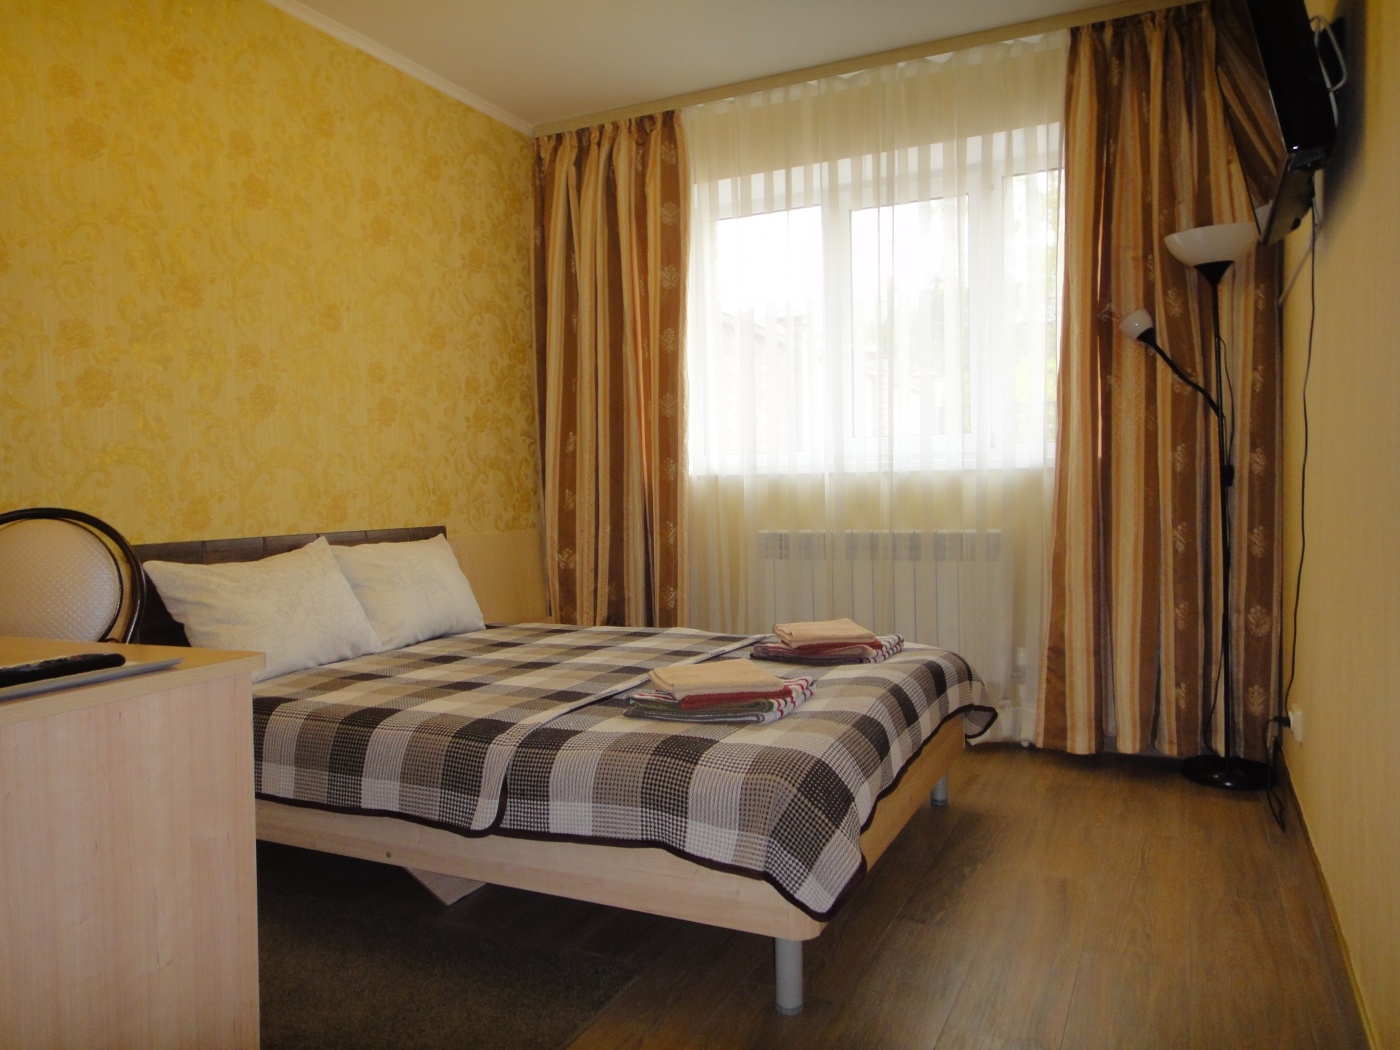  Отель «Семязино» Владимирская область 2-местный номер «Стандарт», фото 2